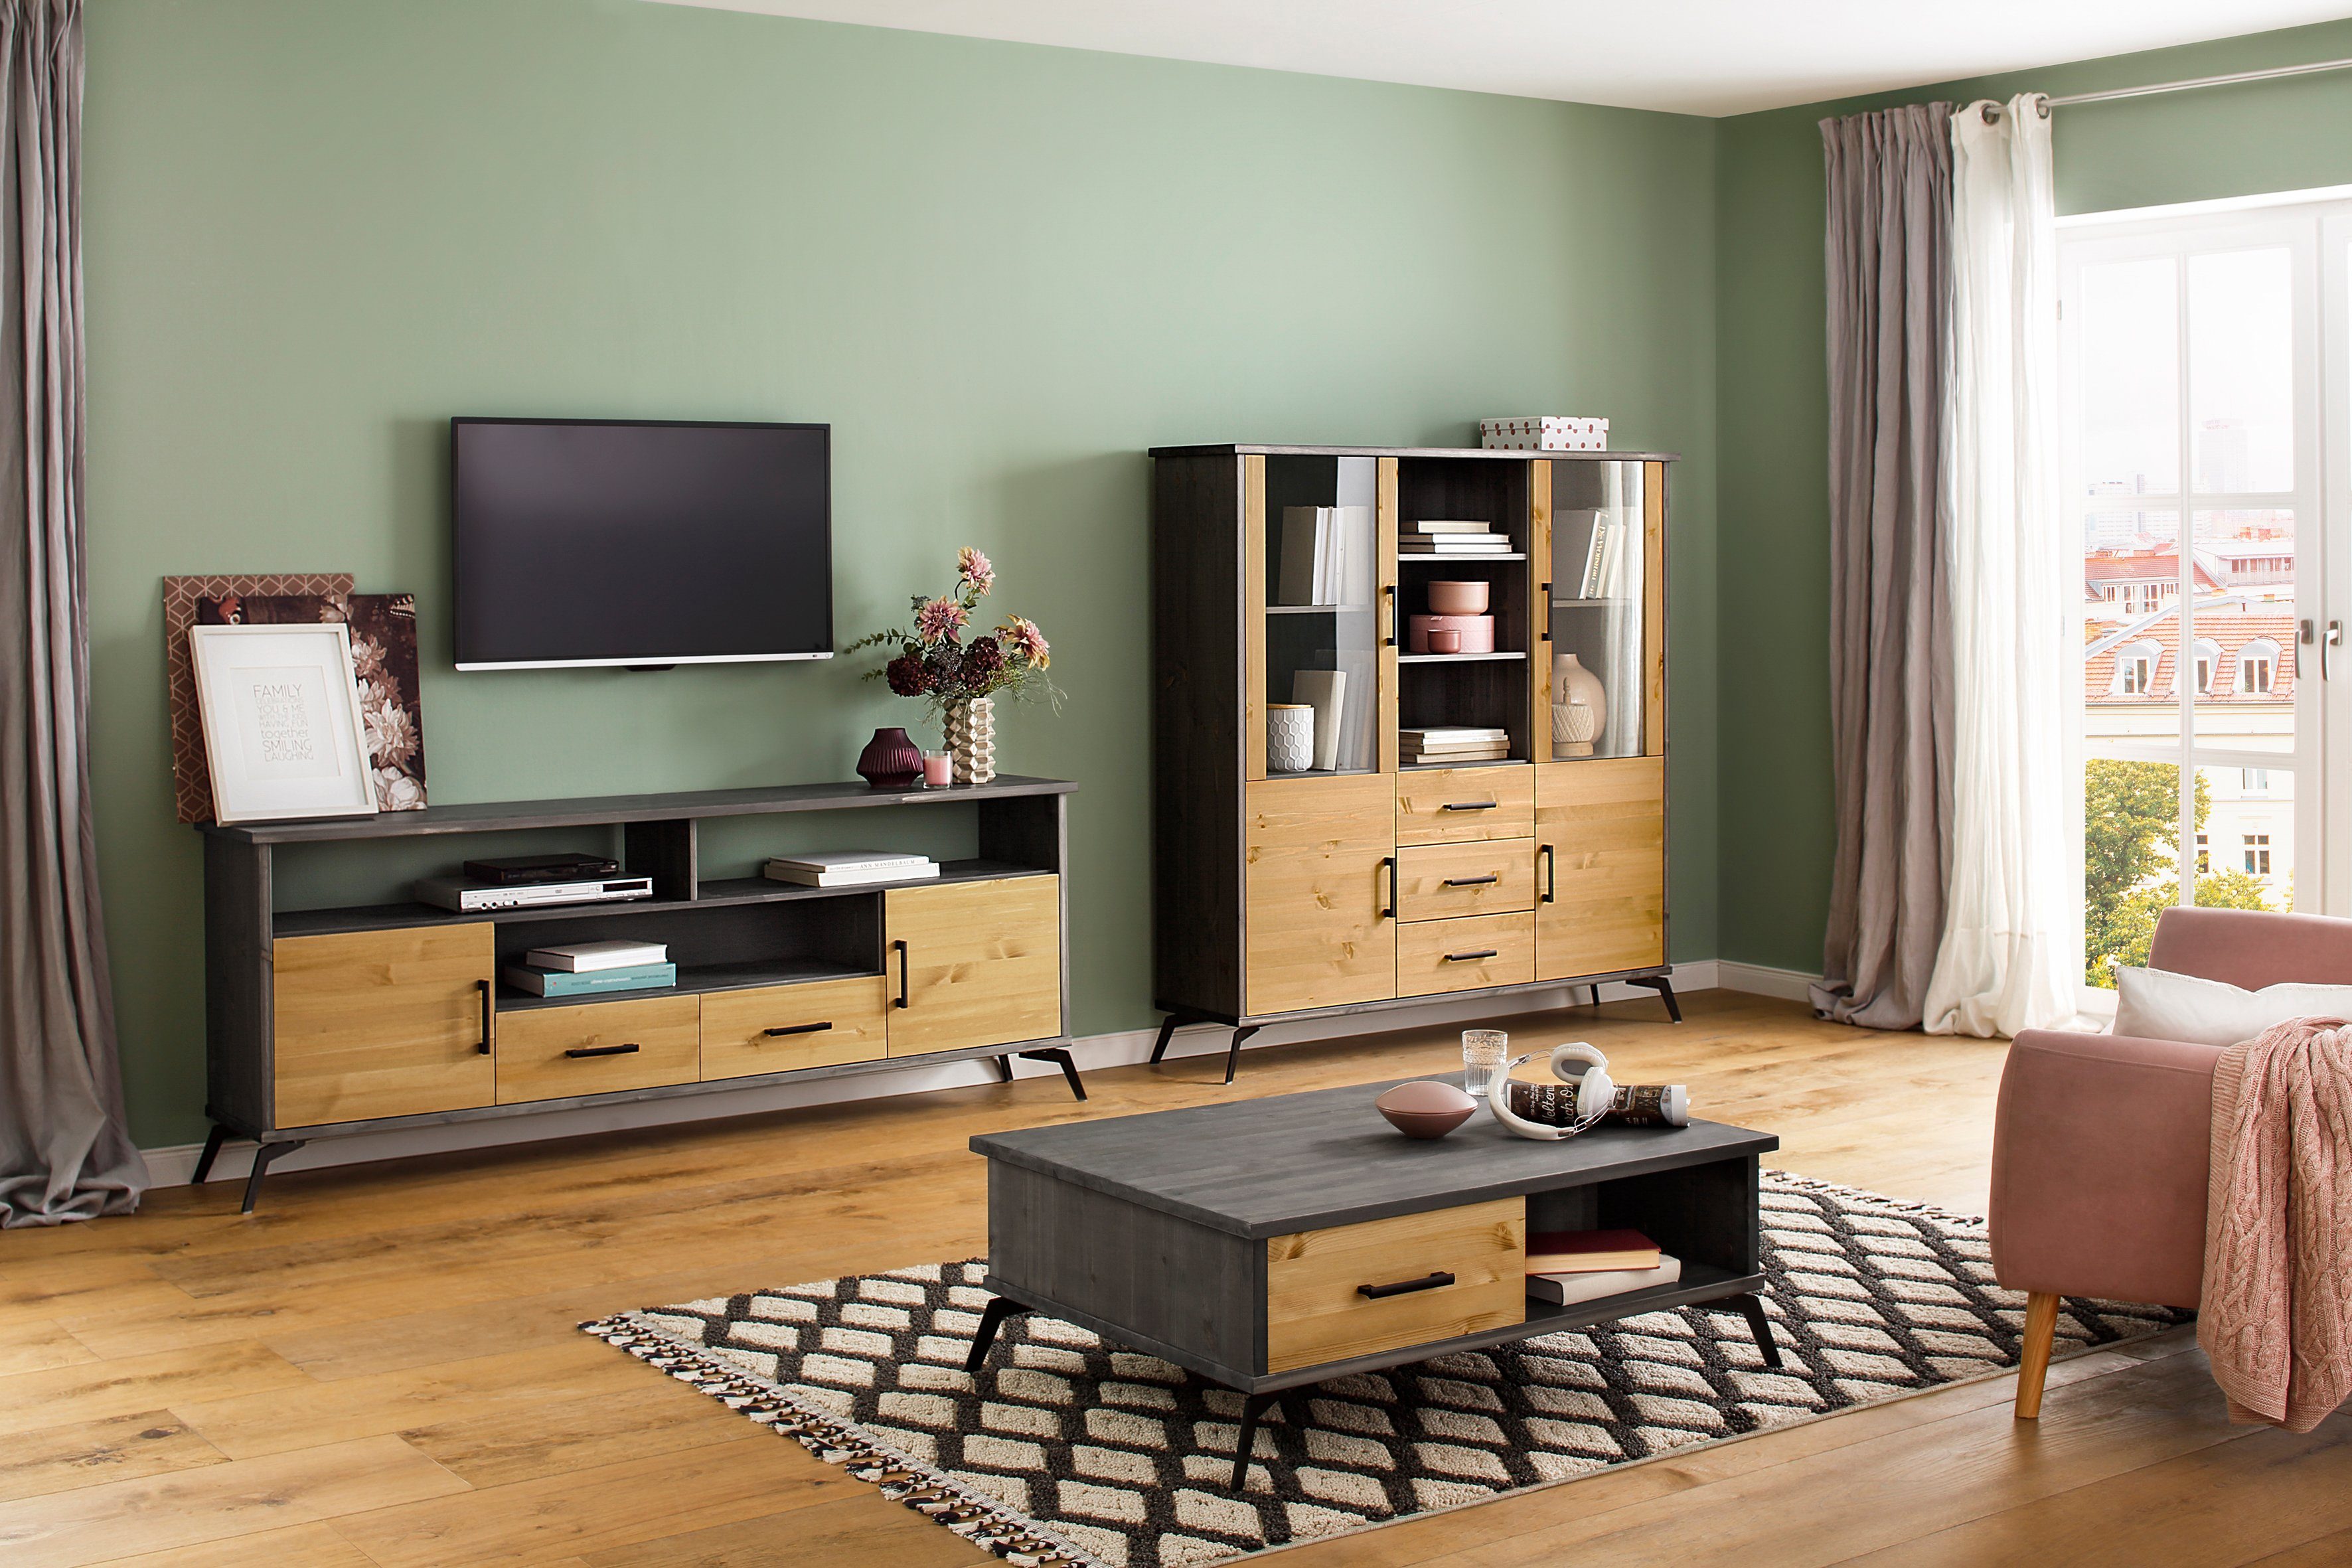 Manie aankomen levering Home affaire Tv-meubel Lisa met metalen handgrepen, breedte 194 cm nu  online bestellen | OTTO